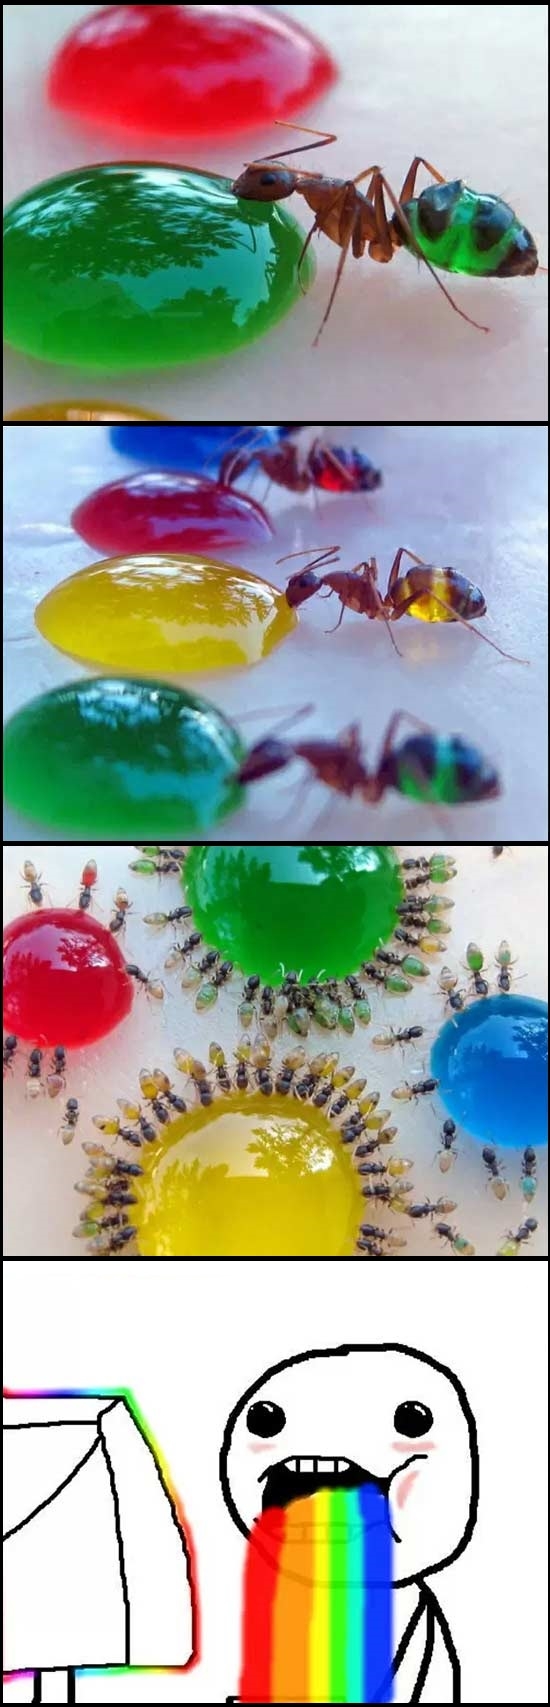 amarillo,azul,colorearse,colores,hormigas,puke rainbows,rojo,verde